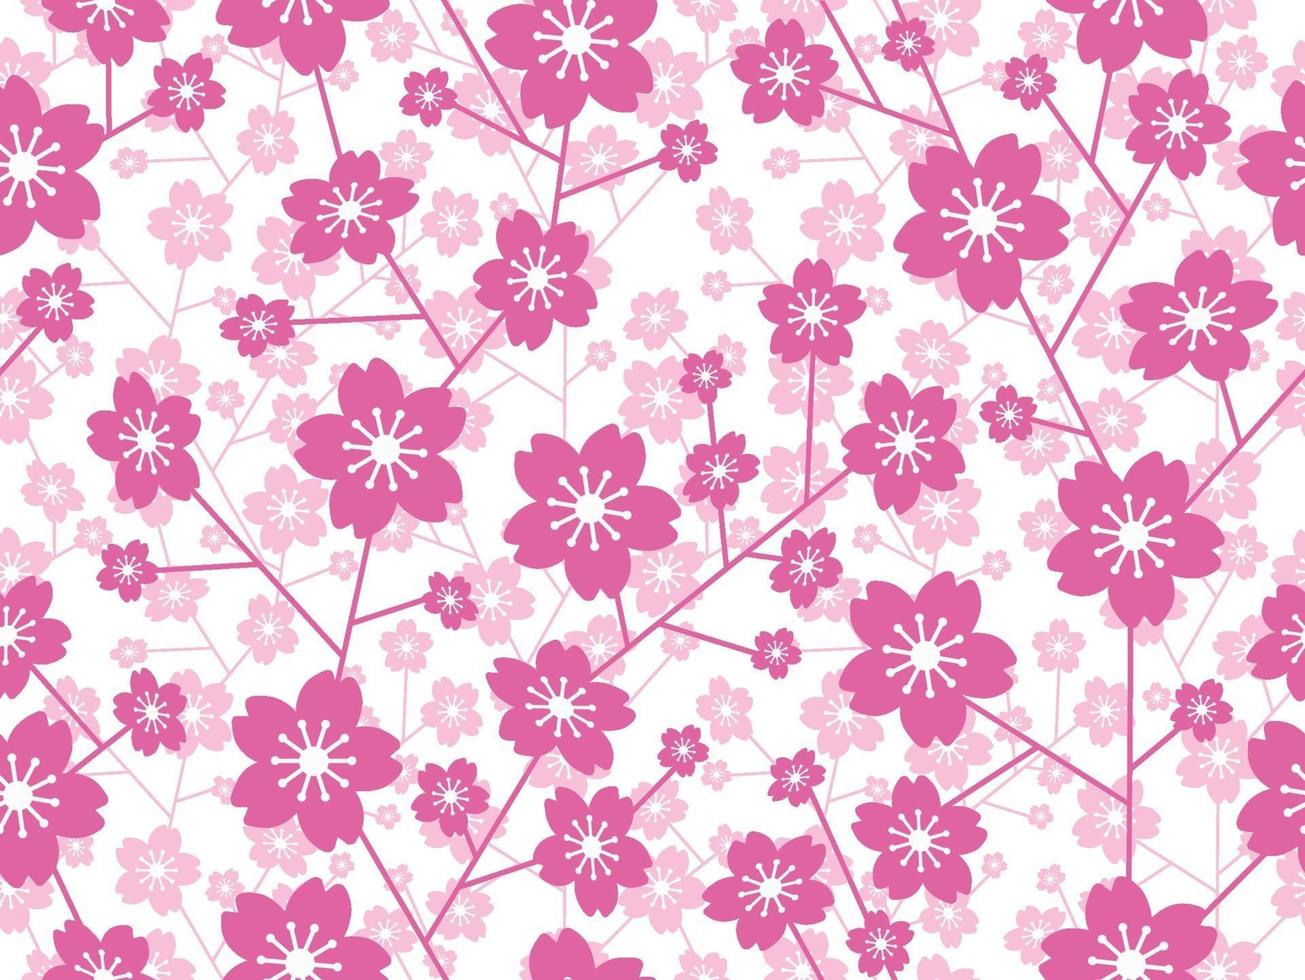 sömlös körsbärsblom blommönster isolerad på en vit bakgrund, vektorillustration. vektor